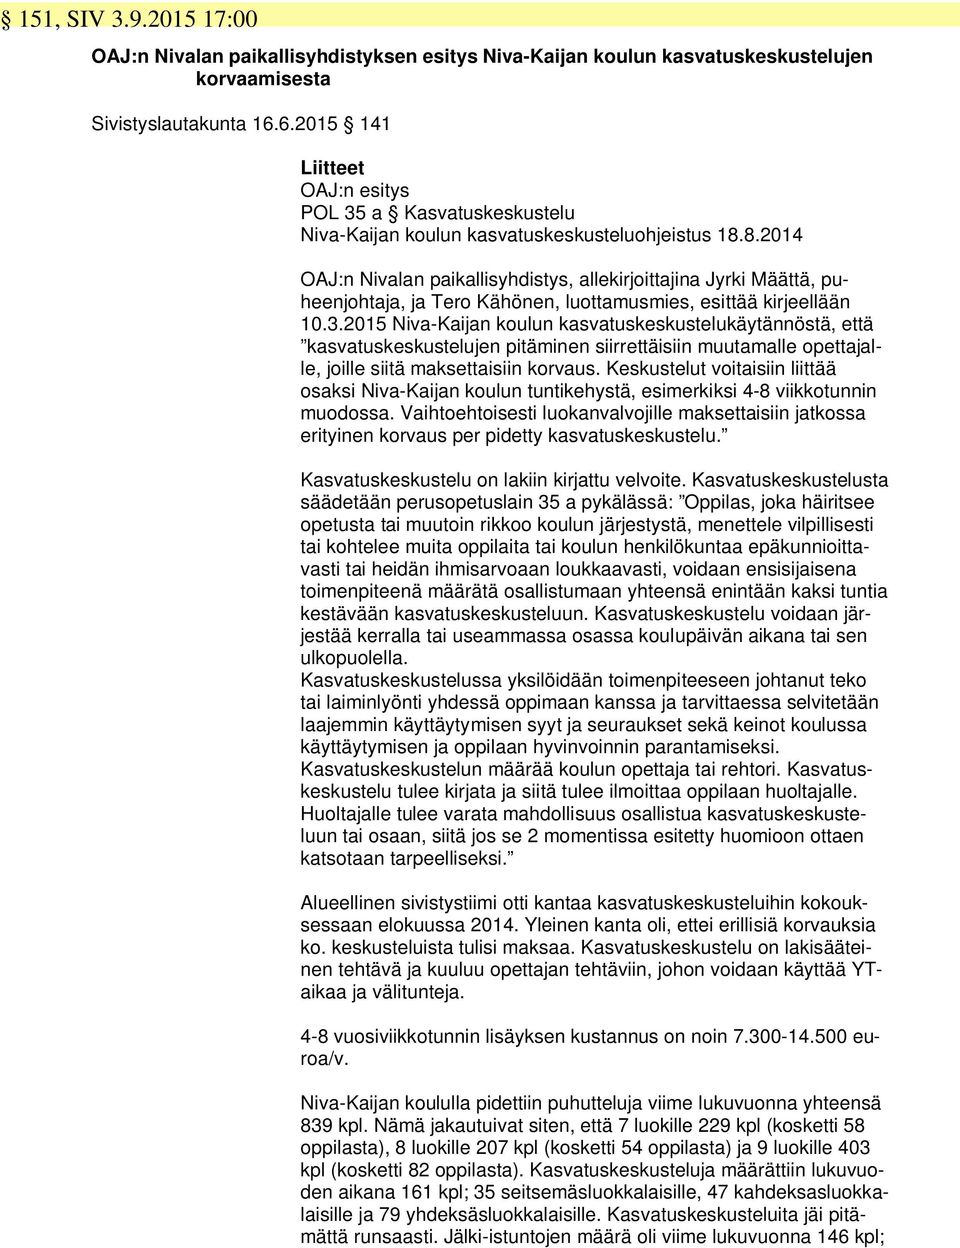 8.2014 OAJ:n Nivalan paikallisyhdistys, allekirjoittajina Jyrki Määttä, puheenjohtaja, ja Tero Kähönen, luottamusmies, esittää kirjeellään 10.3.